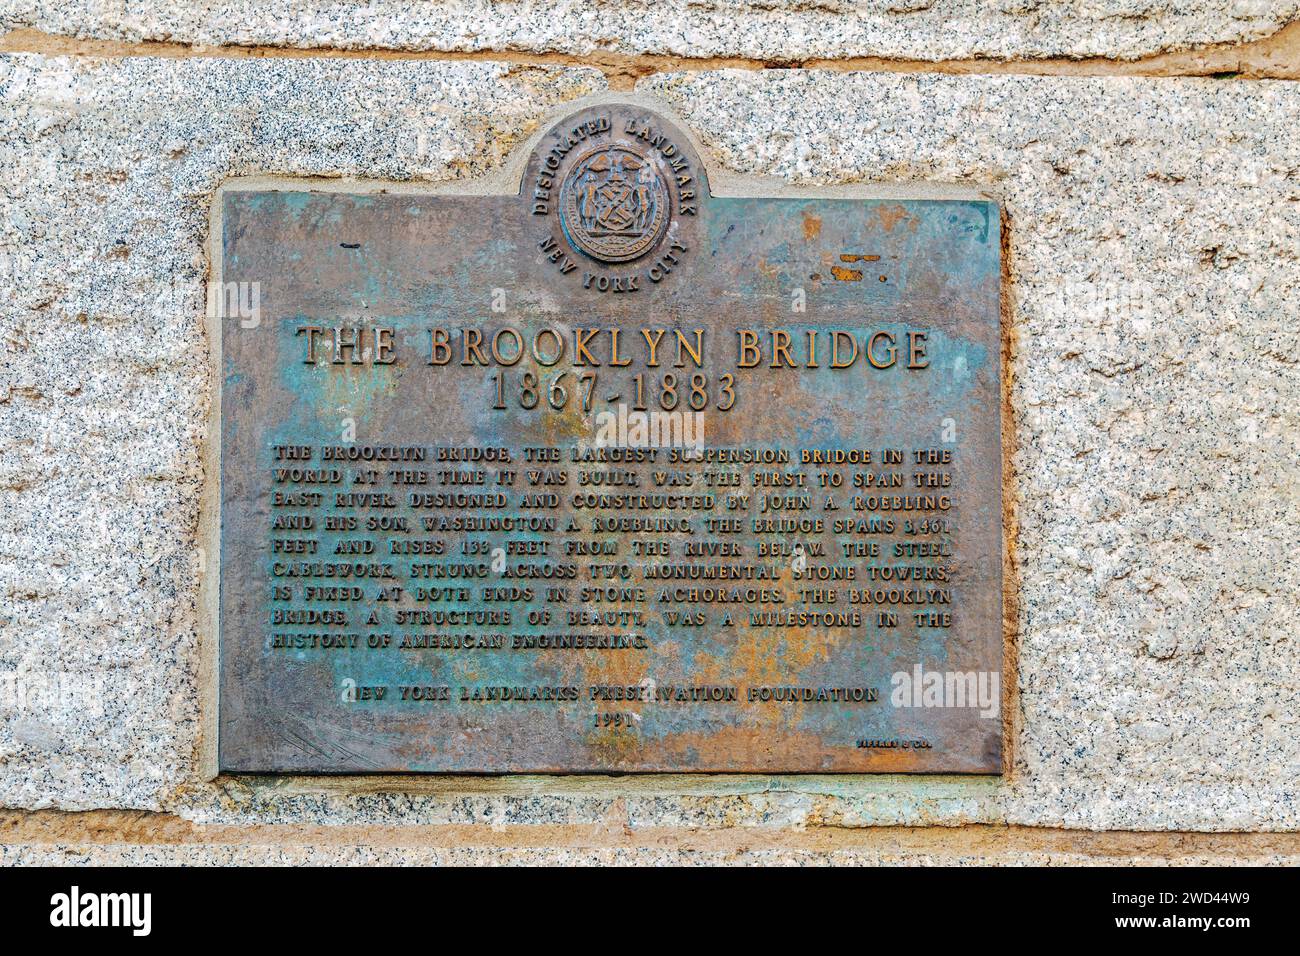 NEW YORK, MANHATTAN-USA 9. MÄRZ 2020: Beschreibende Gedenktafel mit der Brooklyn Bridge, einer hybriden Seilbrücke, die den East River überspannt. Stockfoto